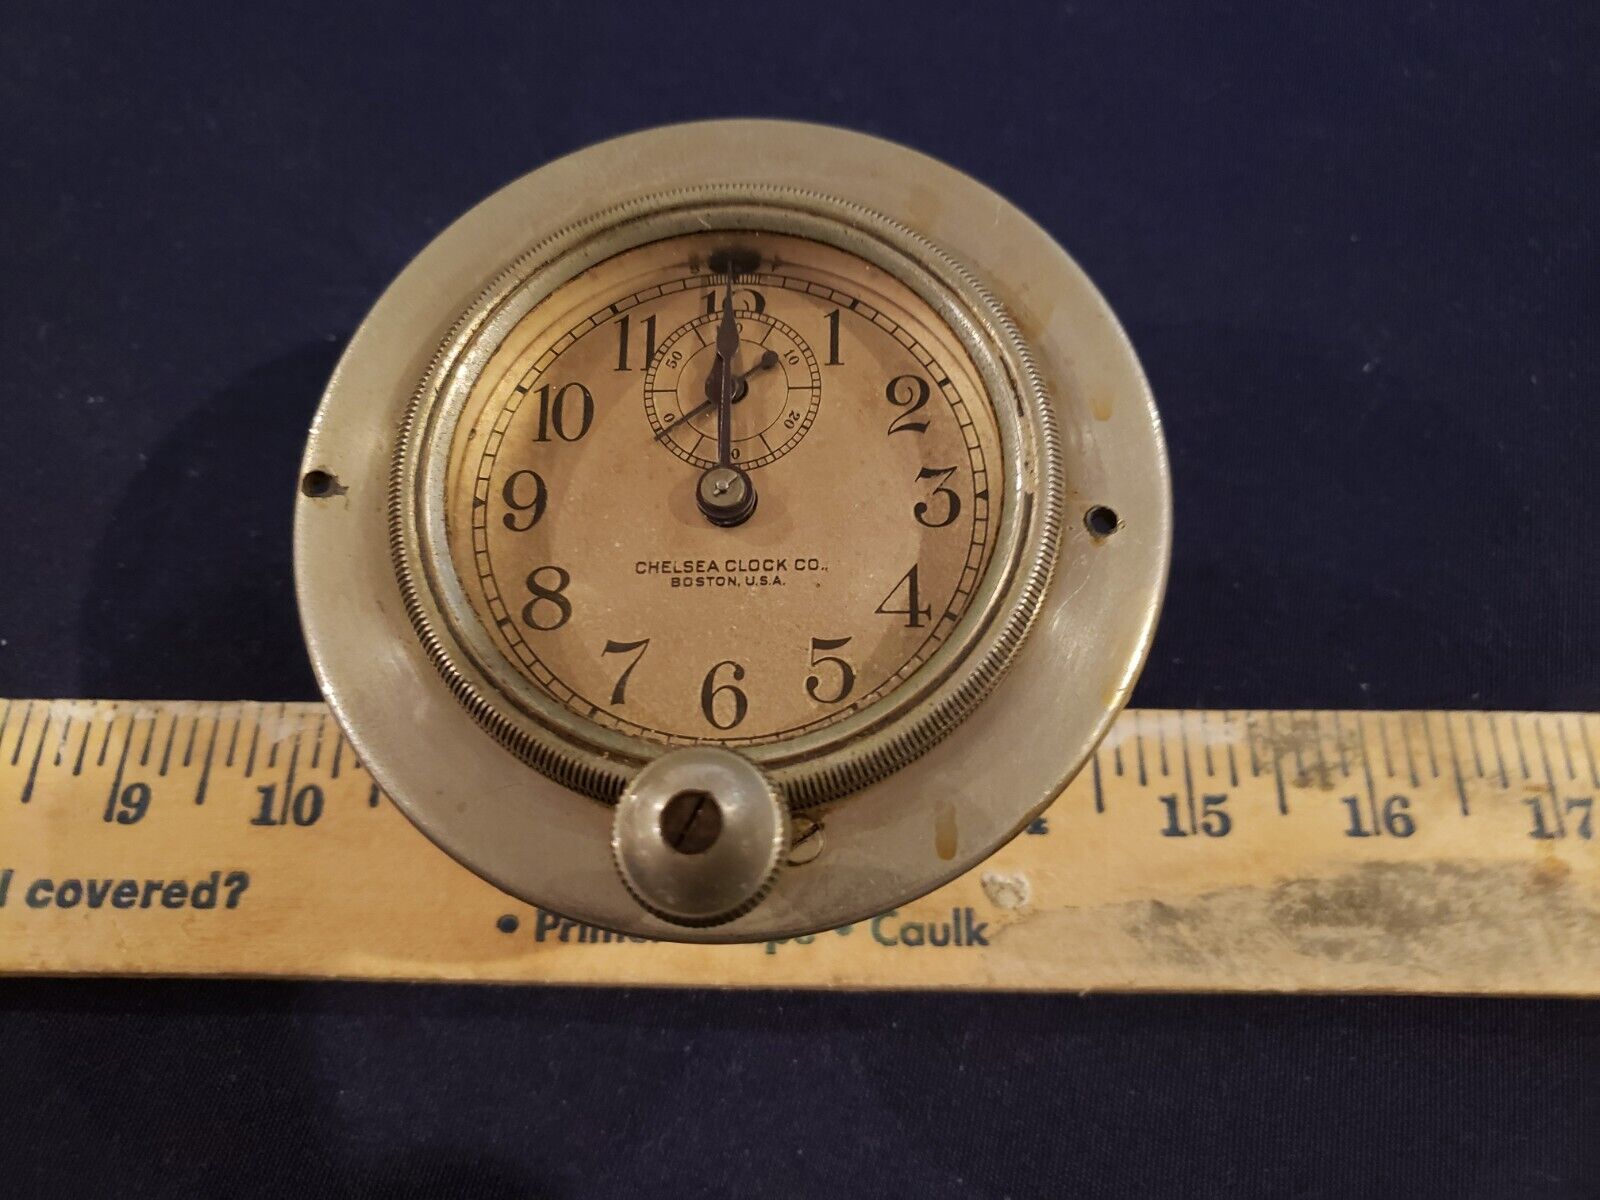 Chelsea model J clock 1920 - 24 (141678) not working - Inspected in Dec 2020